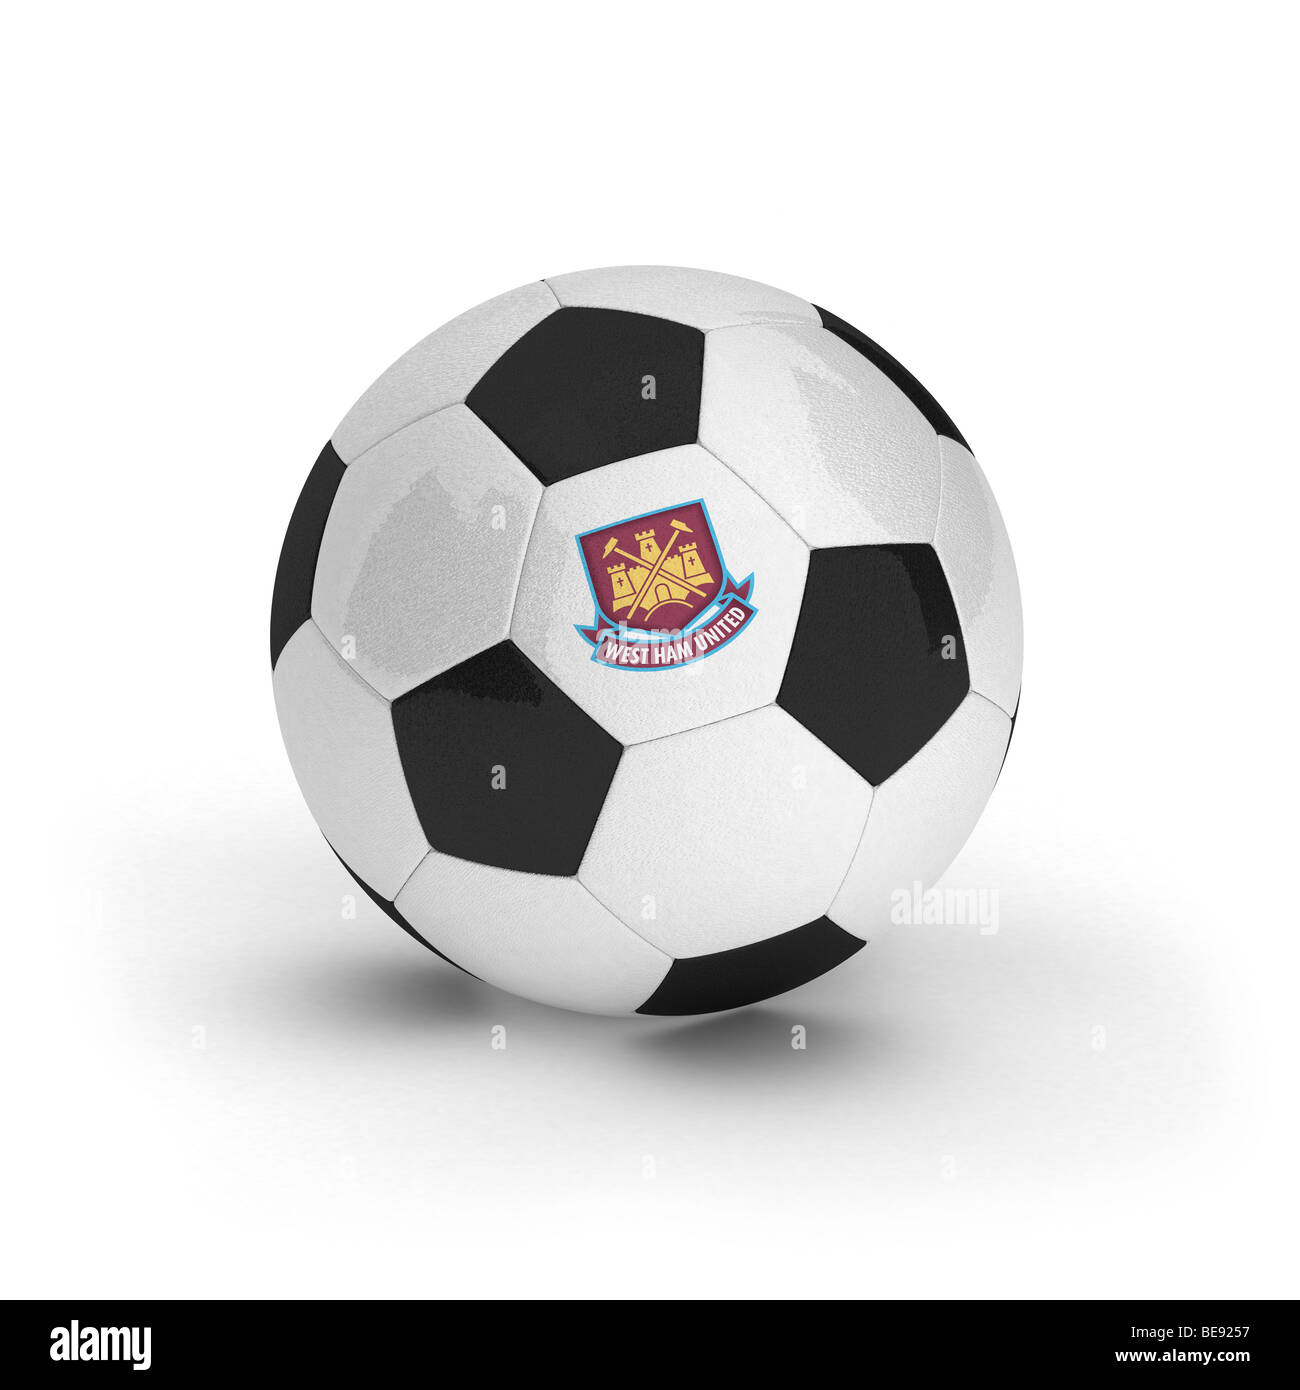 West Ham United Football Club emblème sur un ballon de foot Banque D'Images